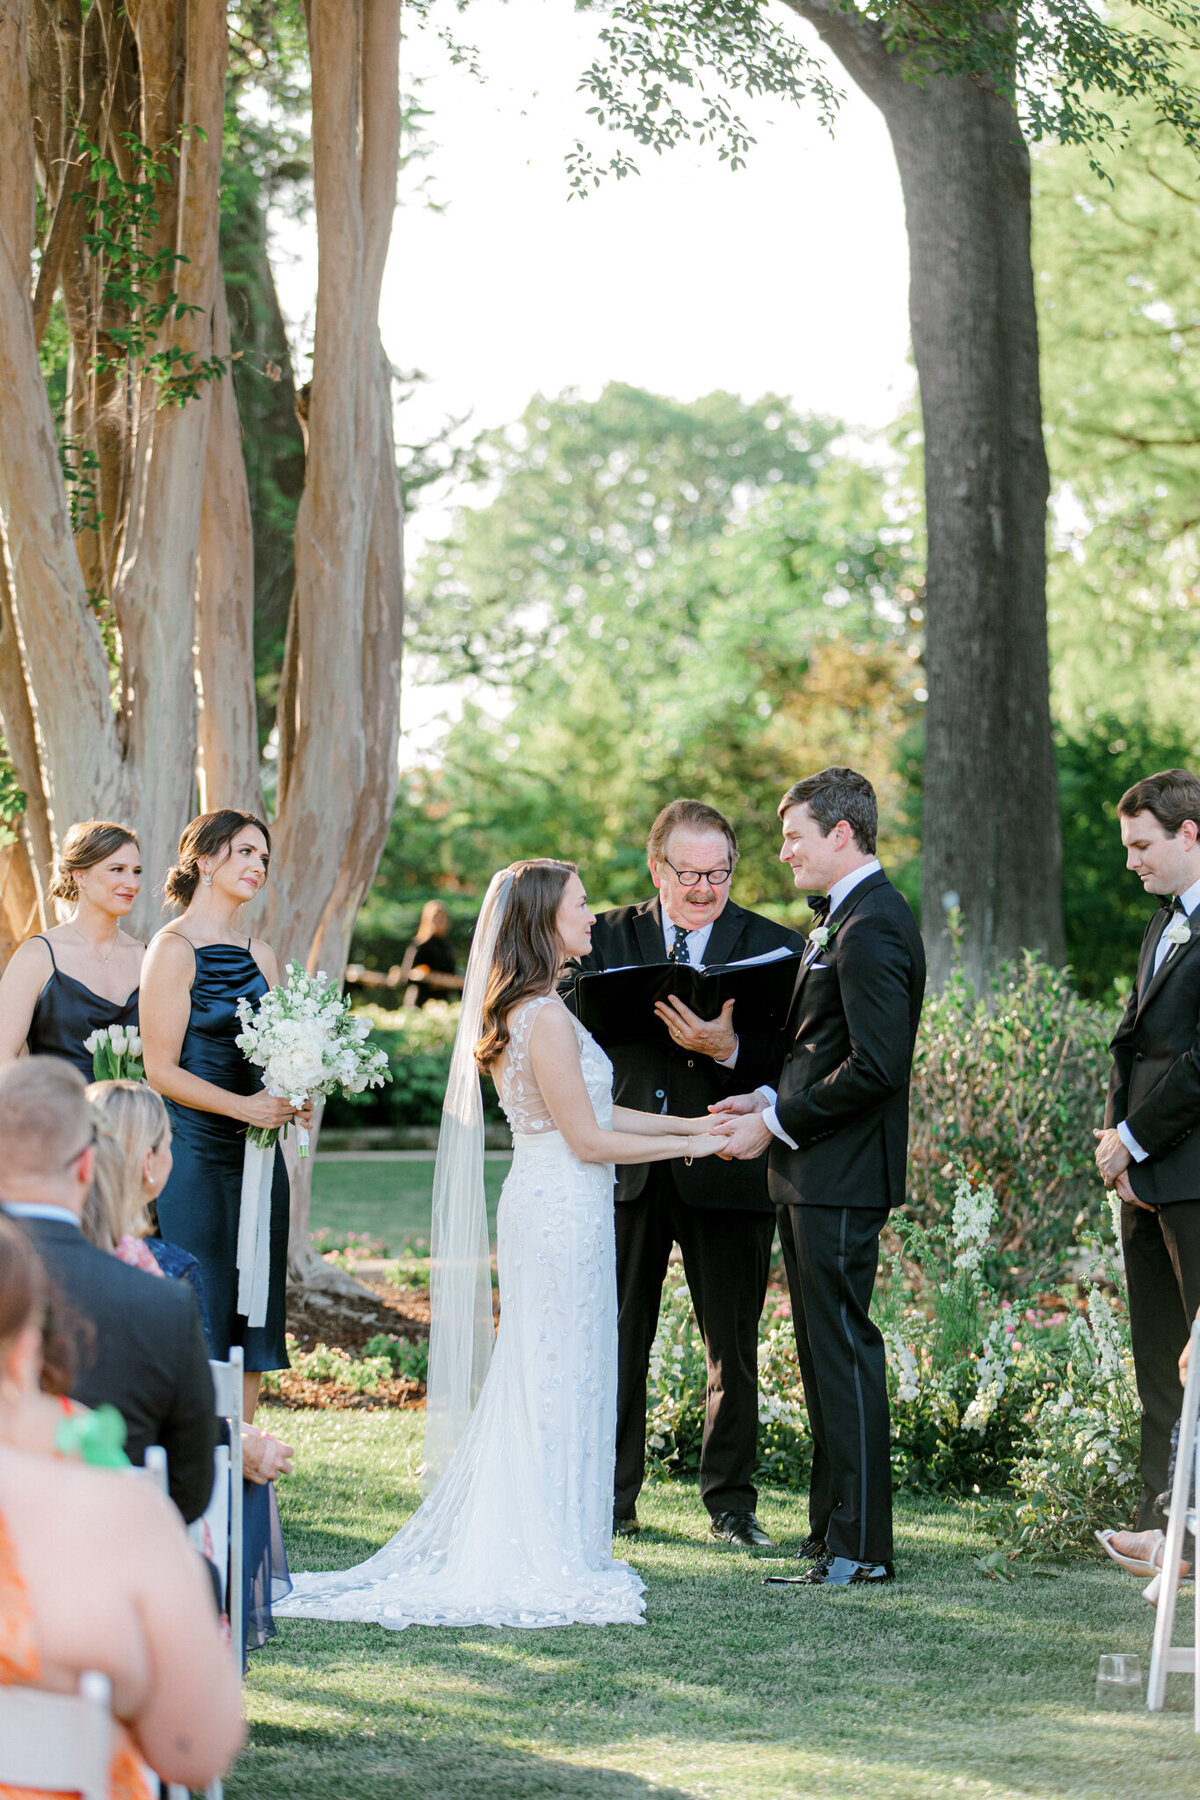 Gena & Matt's Wedding at the Dallas Arboretum | Dallas Wedding Photographer | Sami Kathryn Photography-150